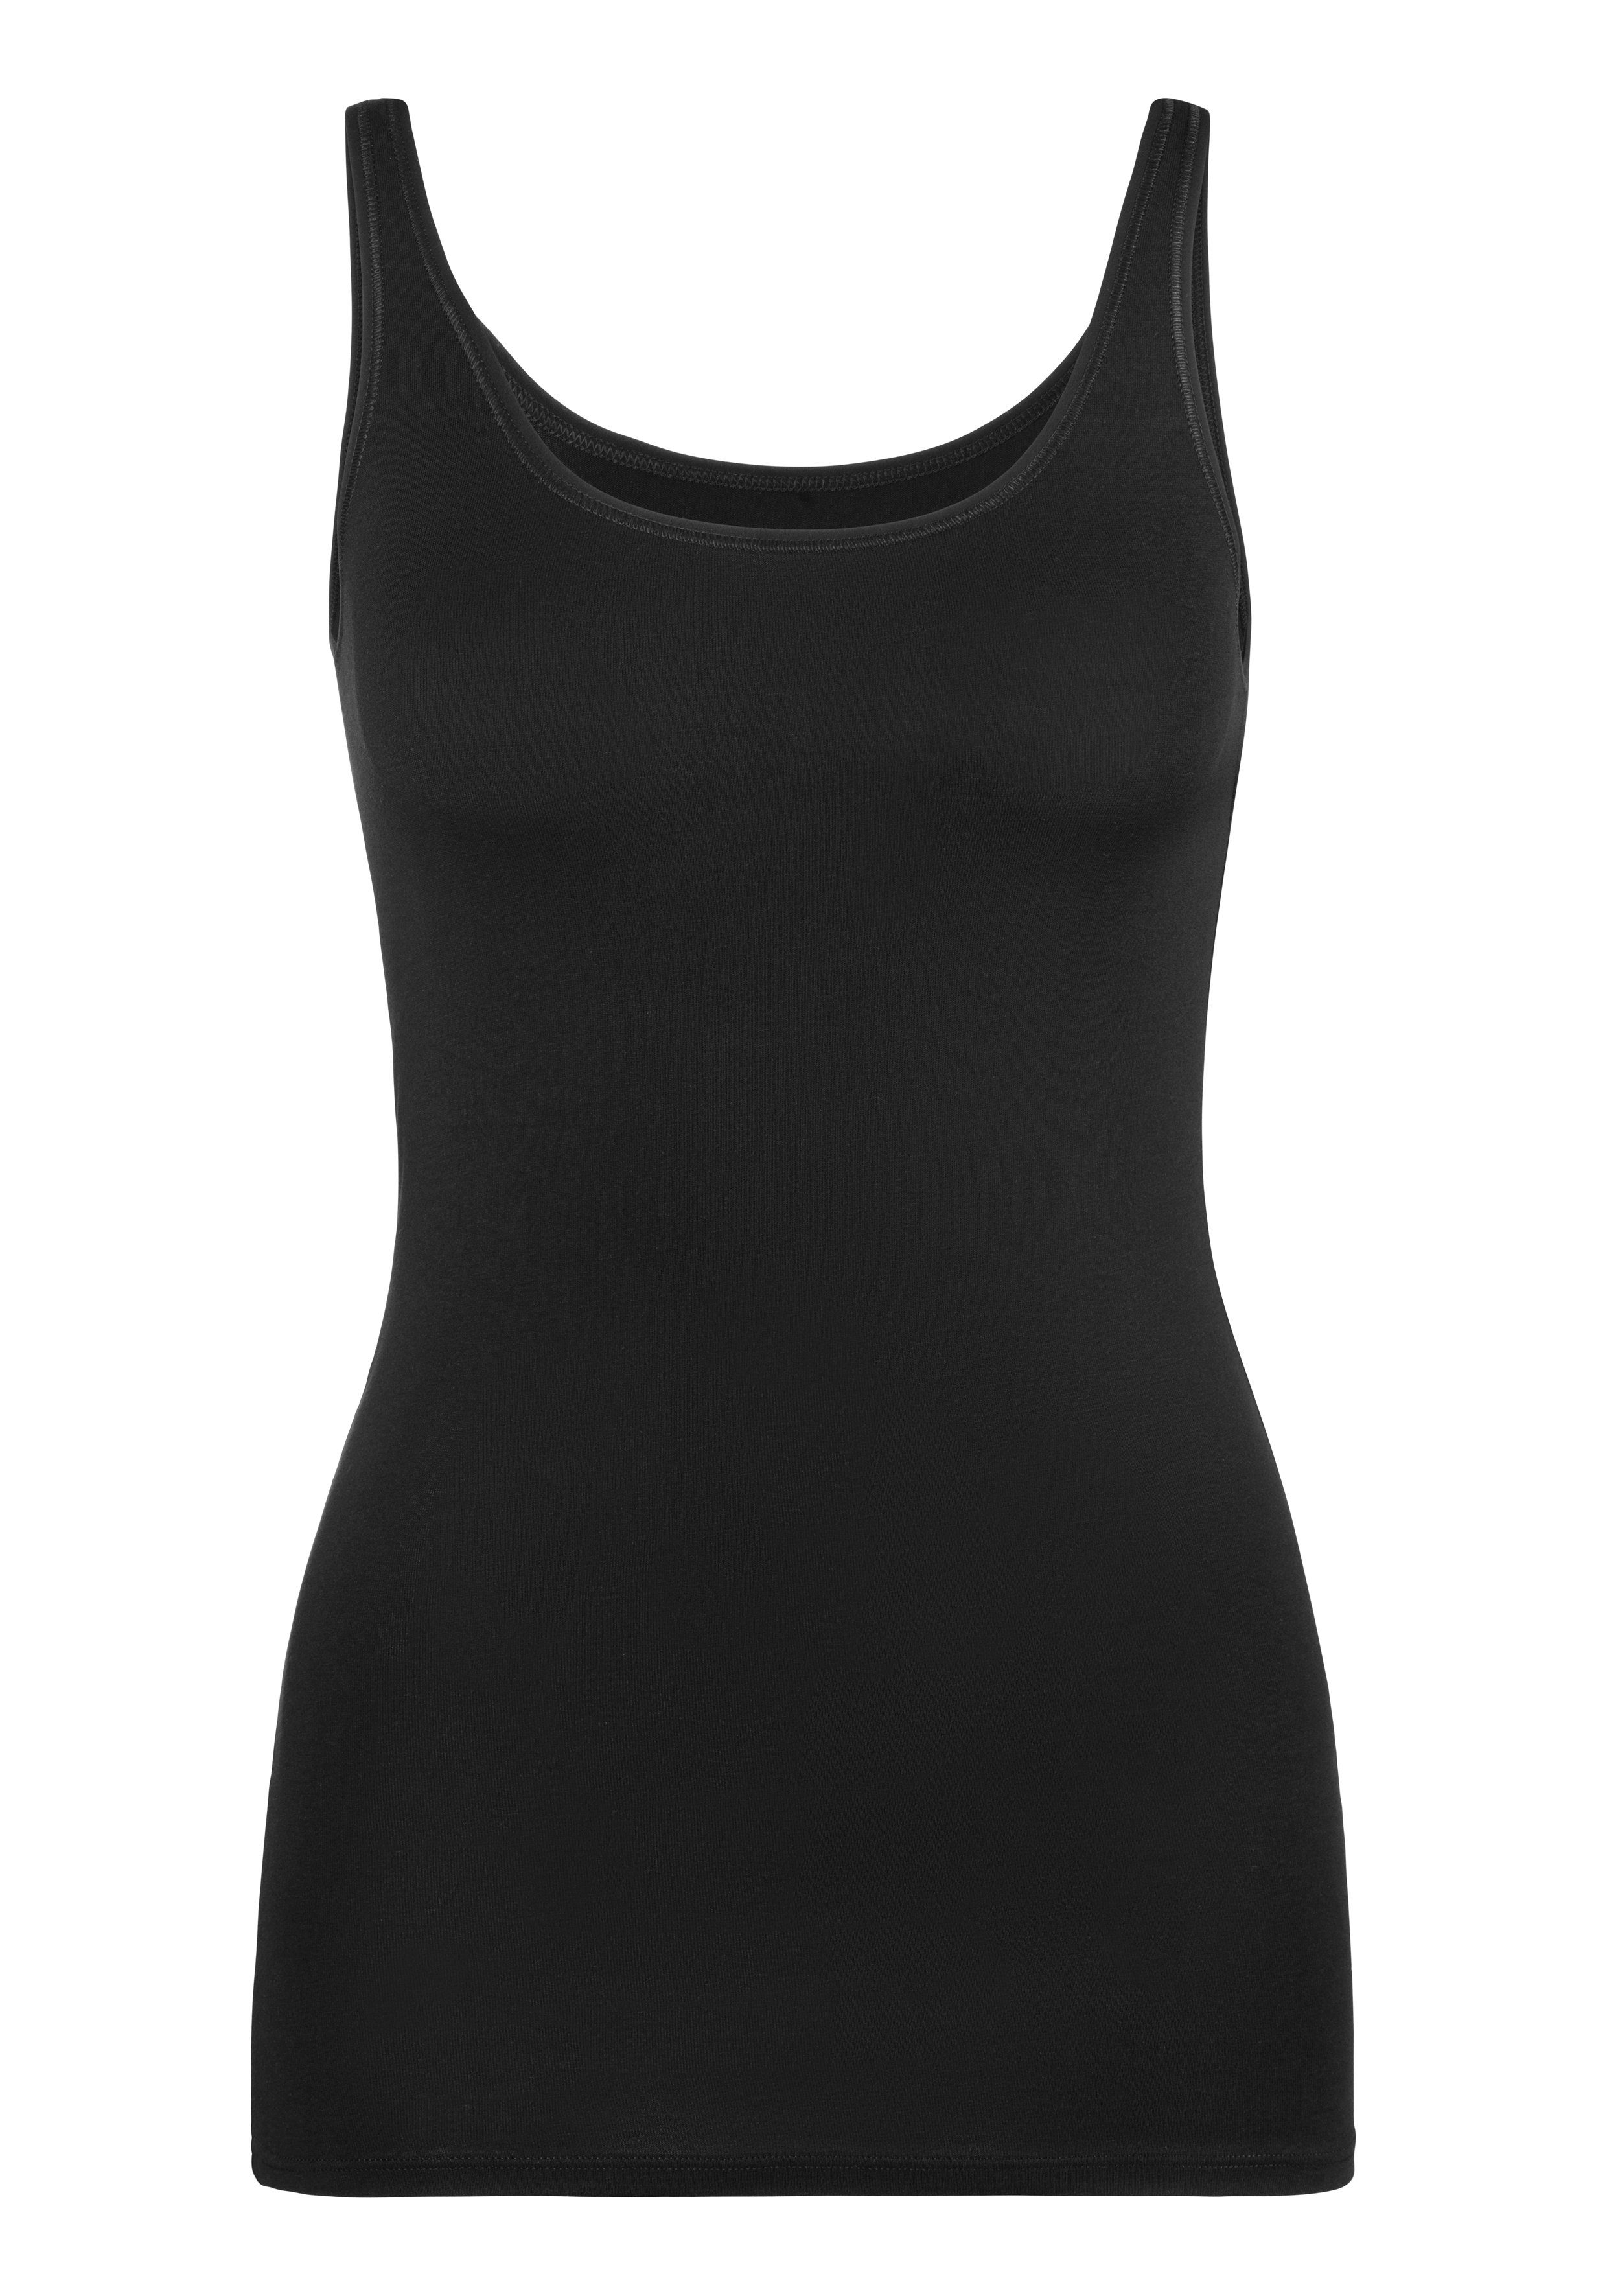 Schiesser Unterhemd (2er-Pack) schwarz/sand mit elastischer Single-Jersey-Qualität